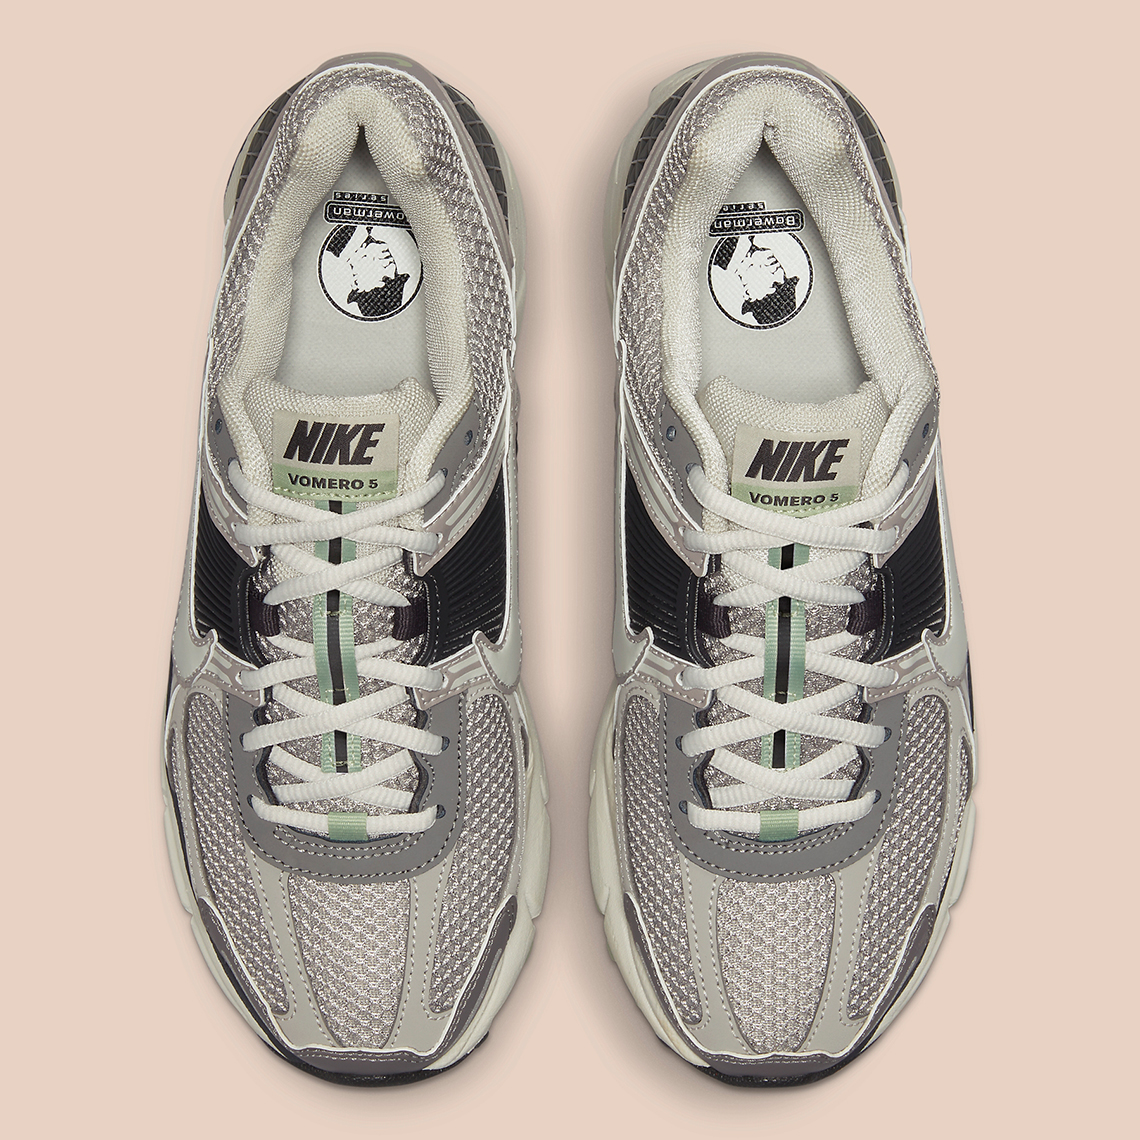 Nike Zoom Vomero 5 “Cobblestone” FB8825-001 | SneakerNews.com